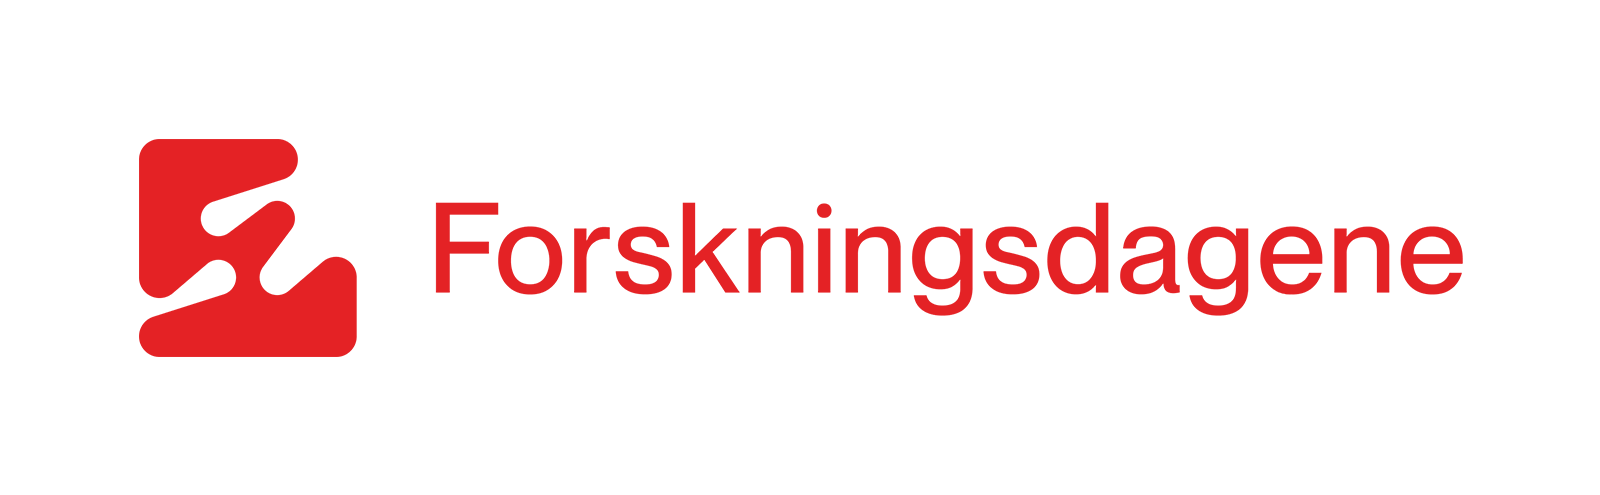 Logo forskningsdagene norsk